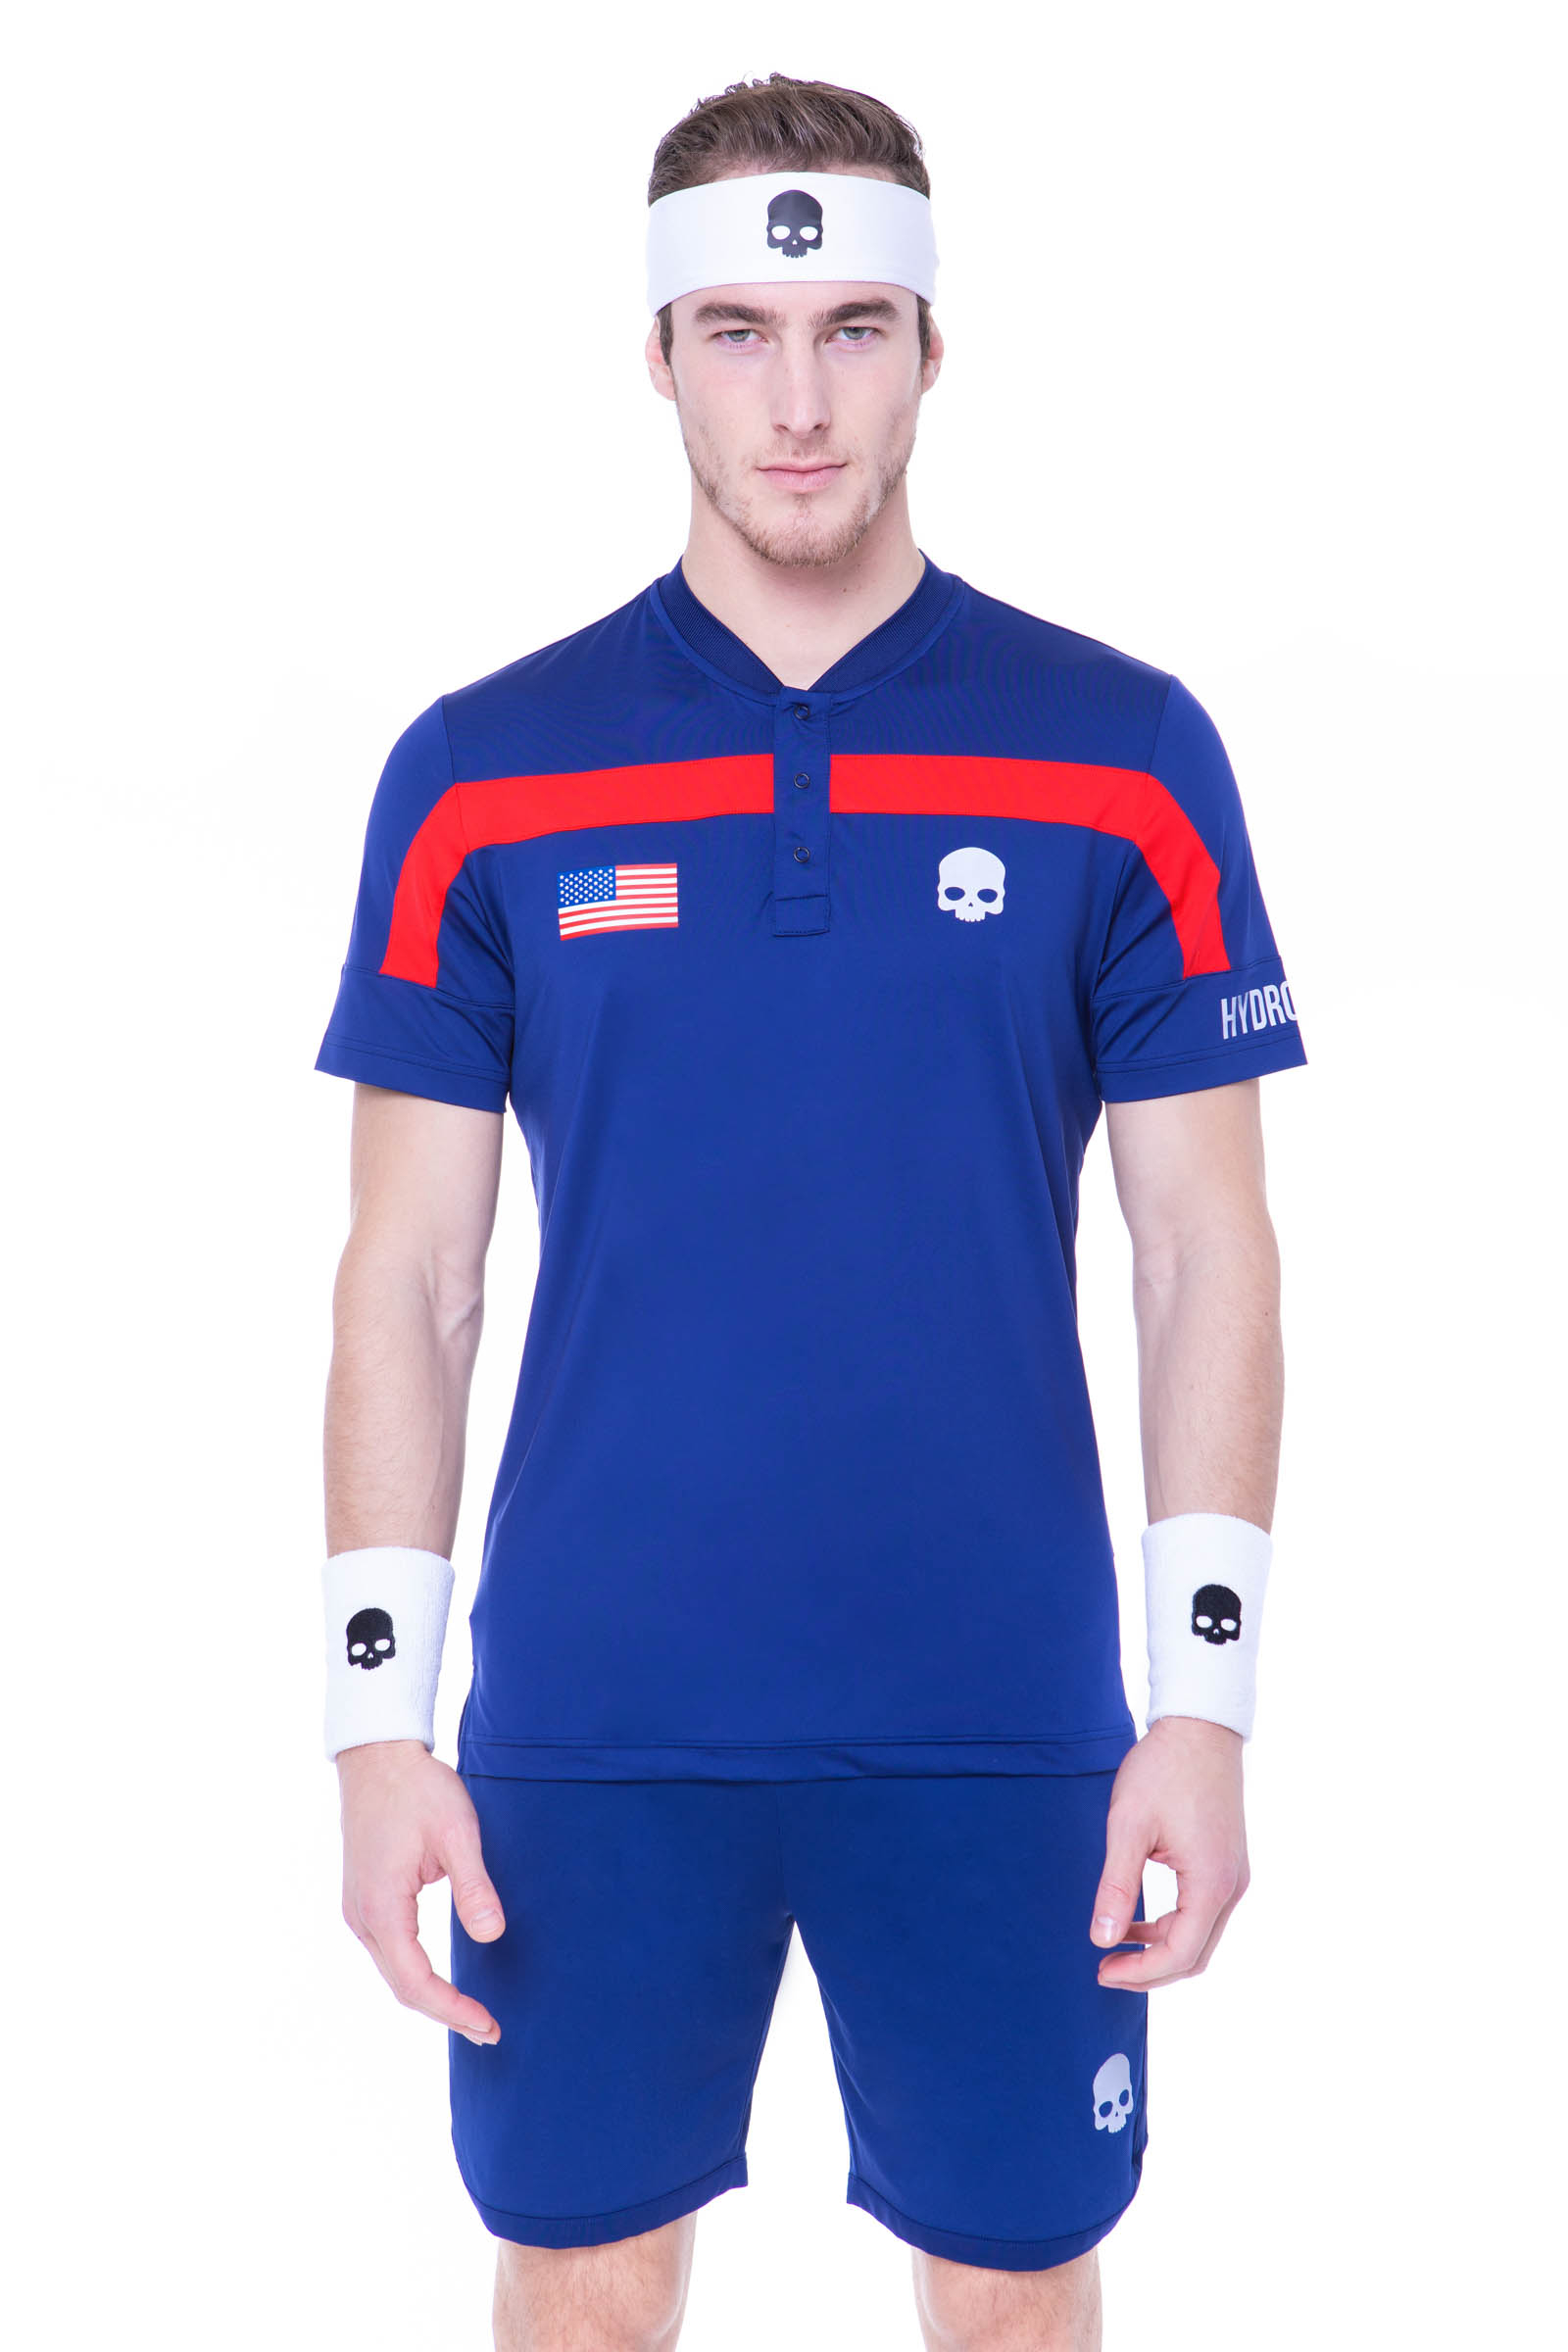 NATION CUP TECH SERAFINO USA - Outlet Hydrogen - Luxury Sportwear